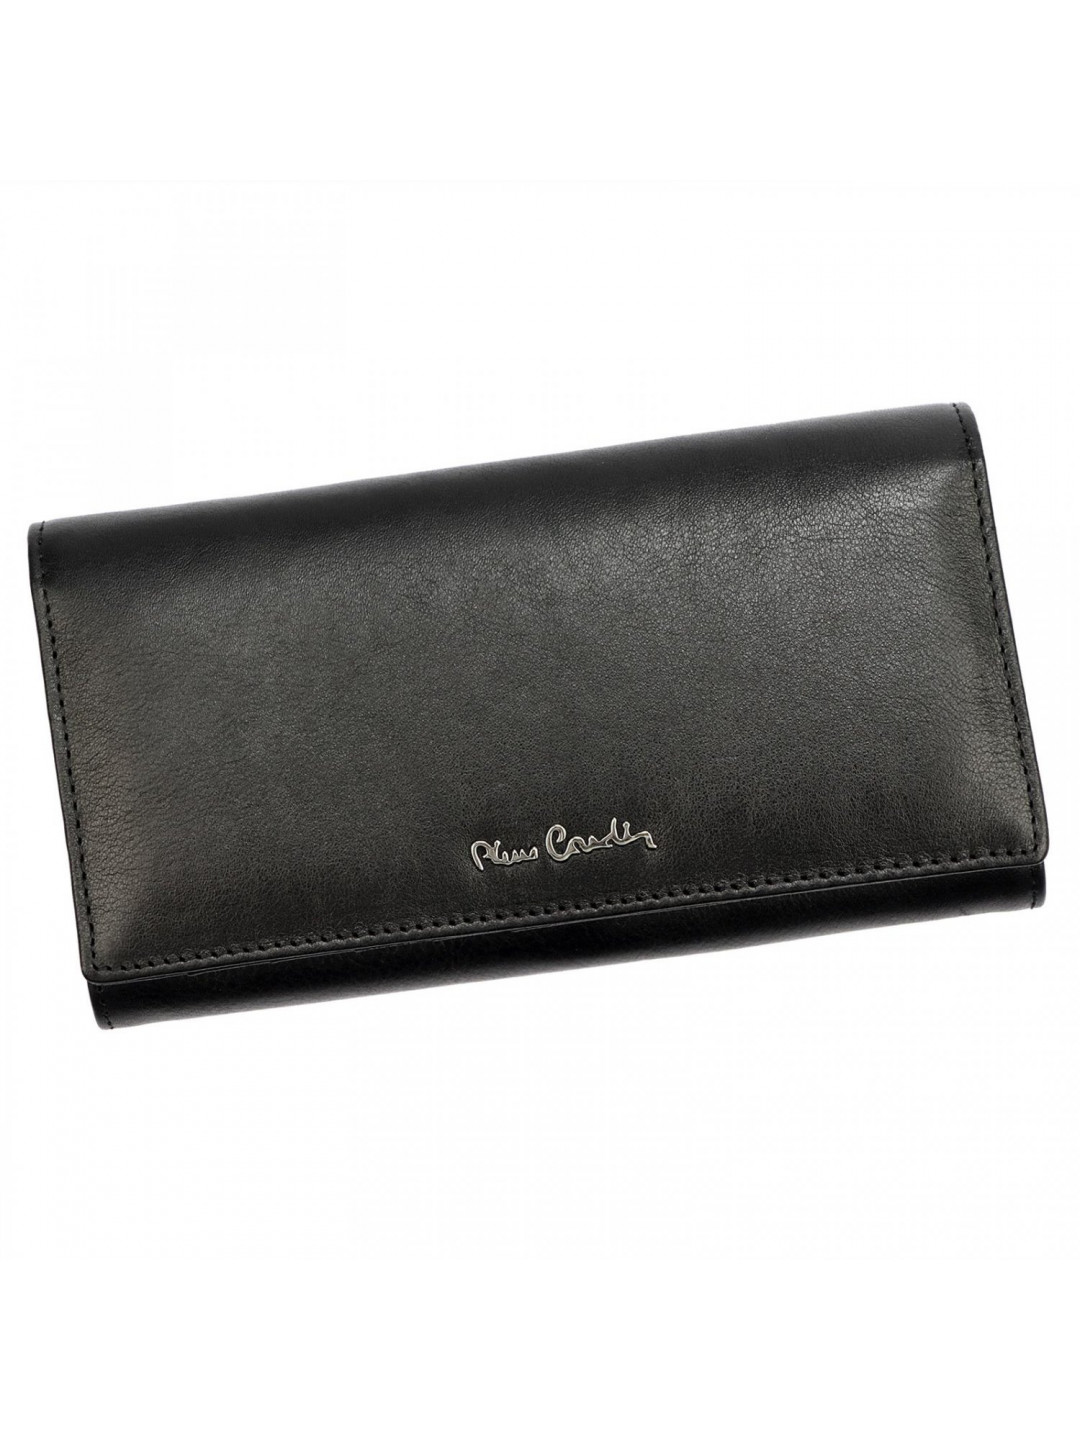 Dámská luxusní kožená peněženka Pierre Cardin Rubeen ČERNA